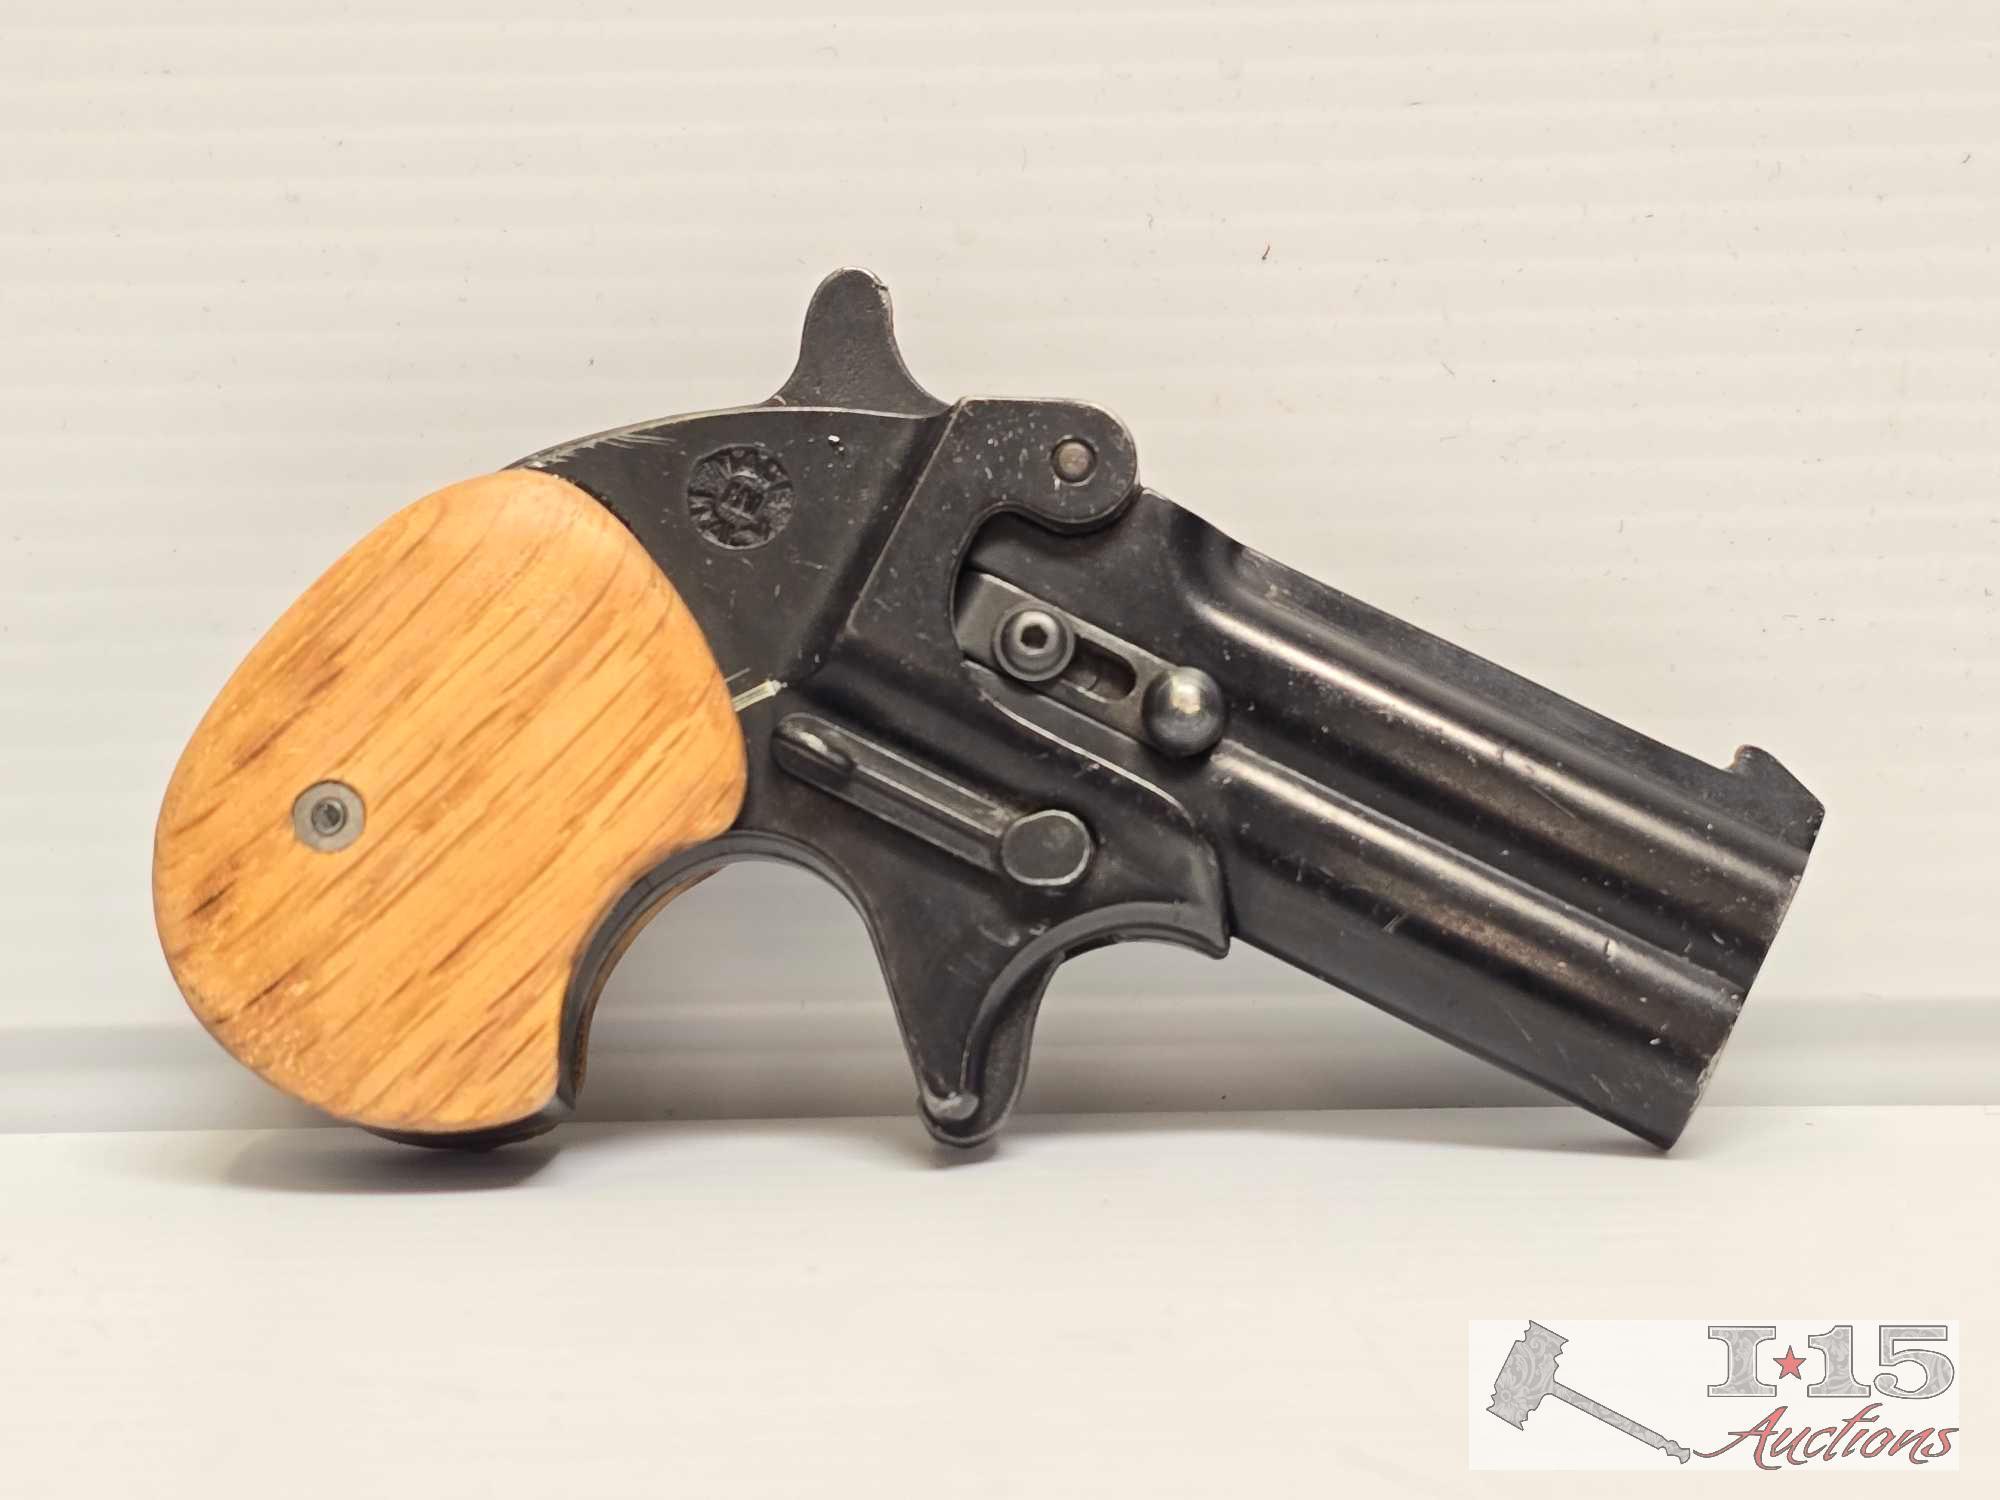 Derringer Cal. 6mm Starter and Olympic Blank Revolver 6mm